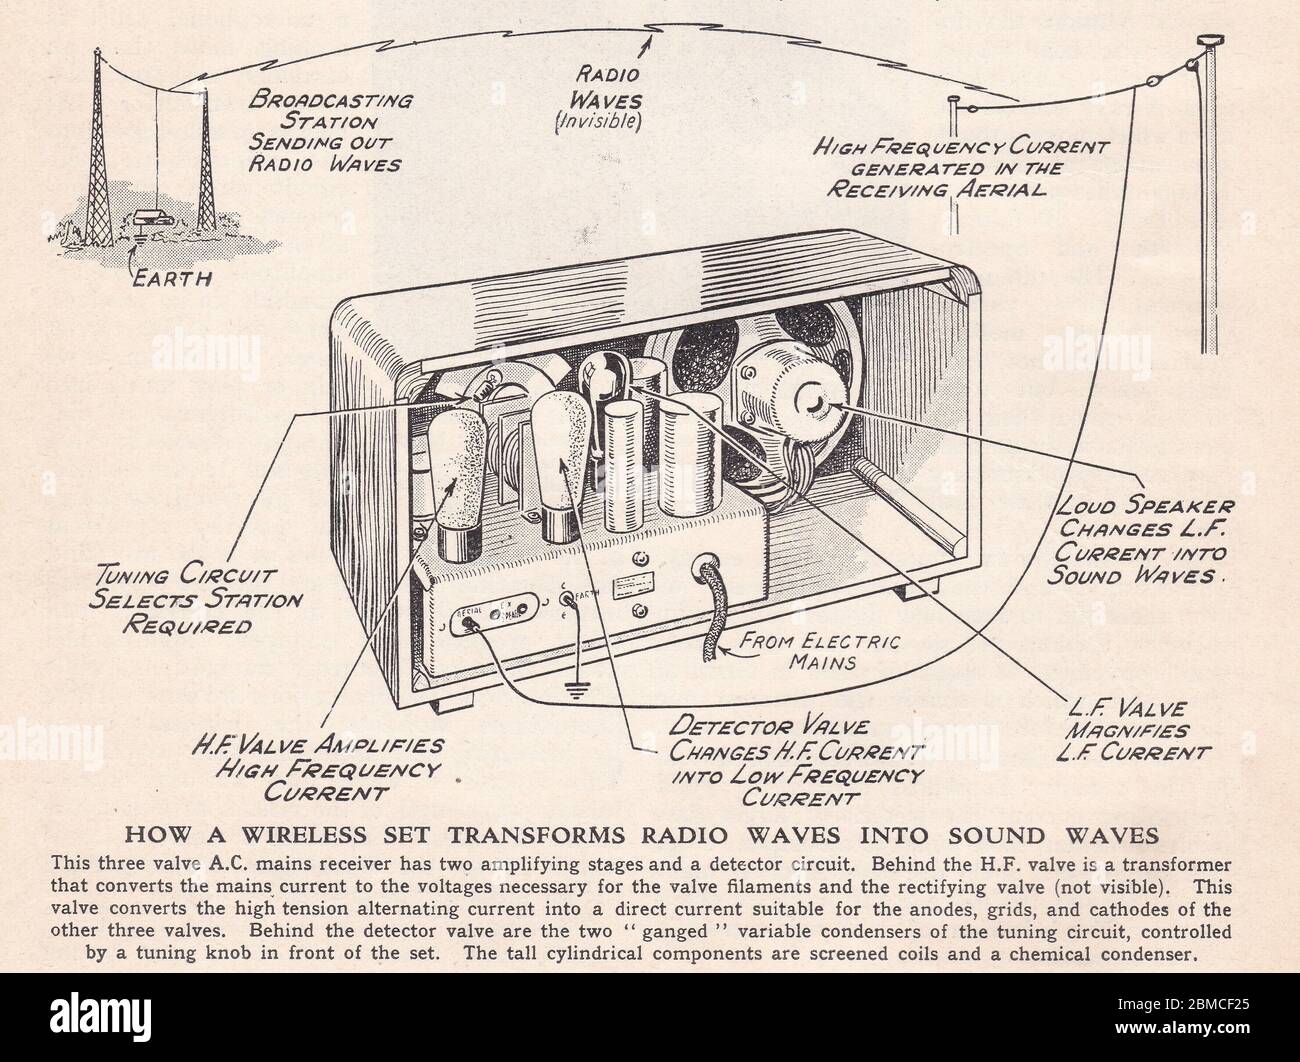 Vintage-Diagramm, wie ein Wireless-Set Funkwellen in Schallwellen 1900er verwandelt. Stockfoto